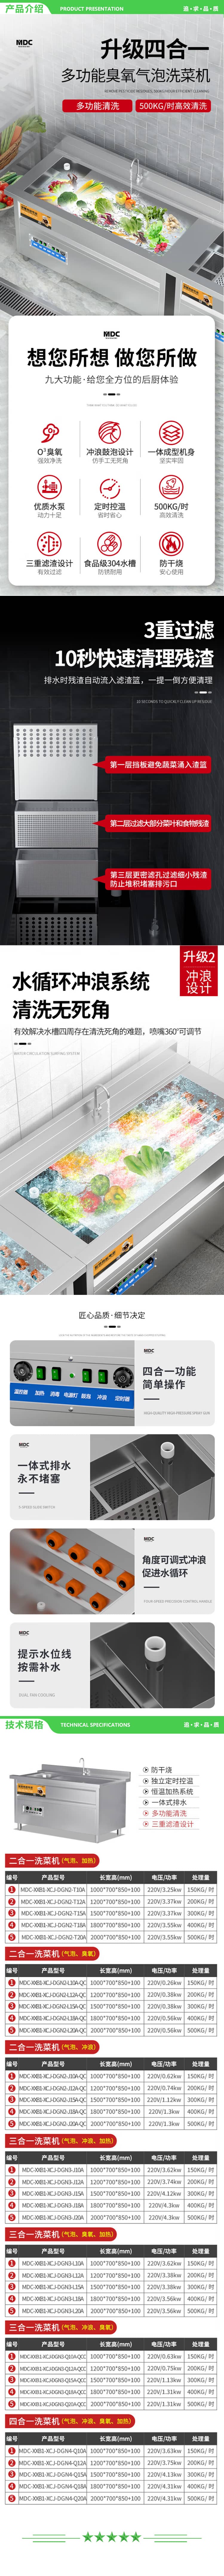 麦大厨 MDC-XXB1-XCJ-DGN3-J18A 商用洗菜机全自动多功能涡流加热气泡冲浪式食堂果蔬清洗机 2.jpg